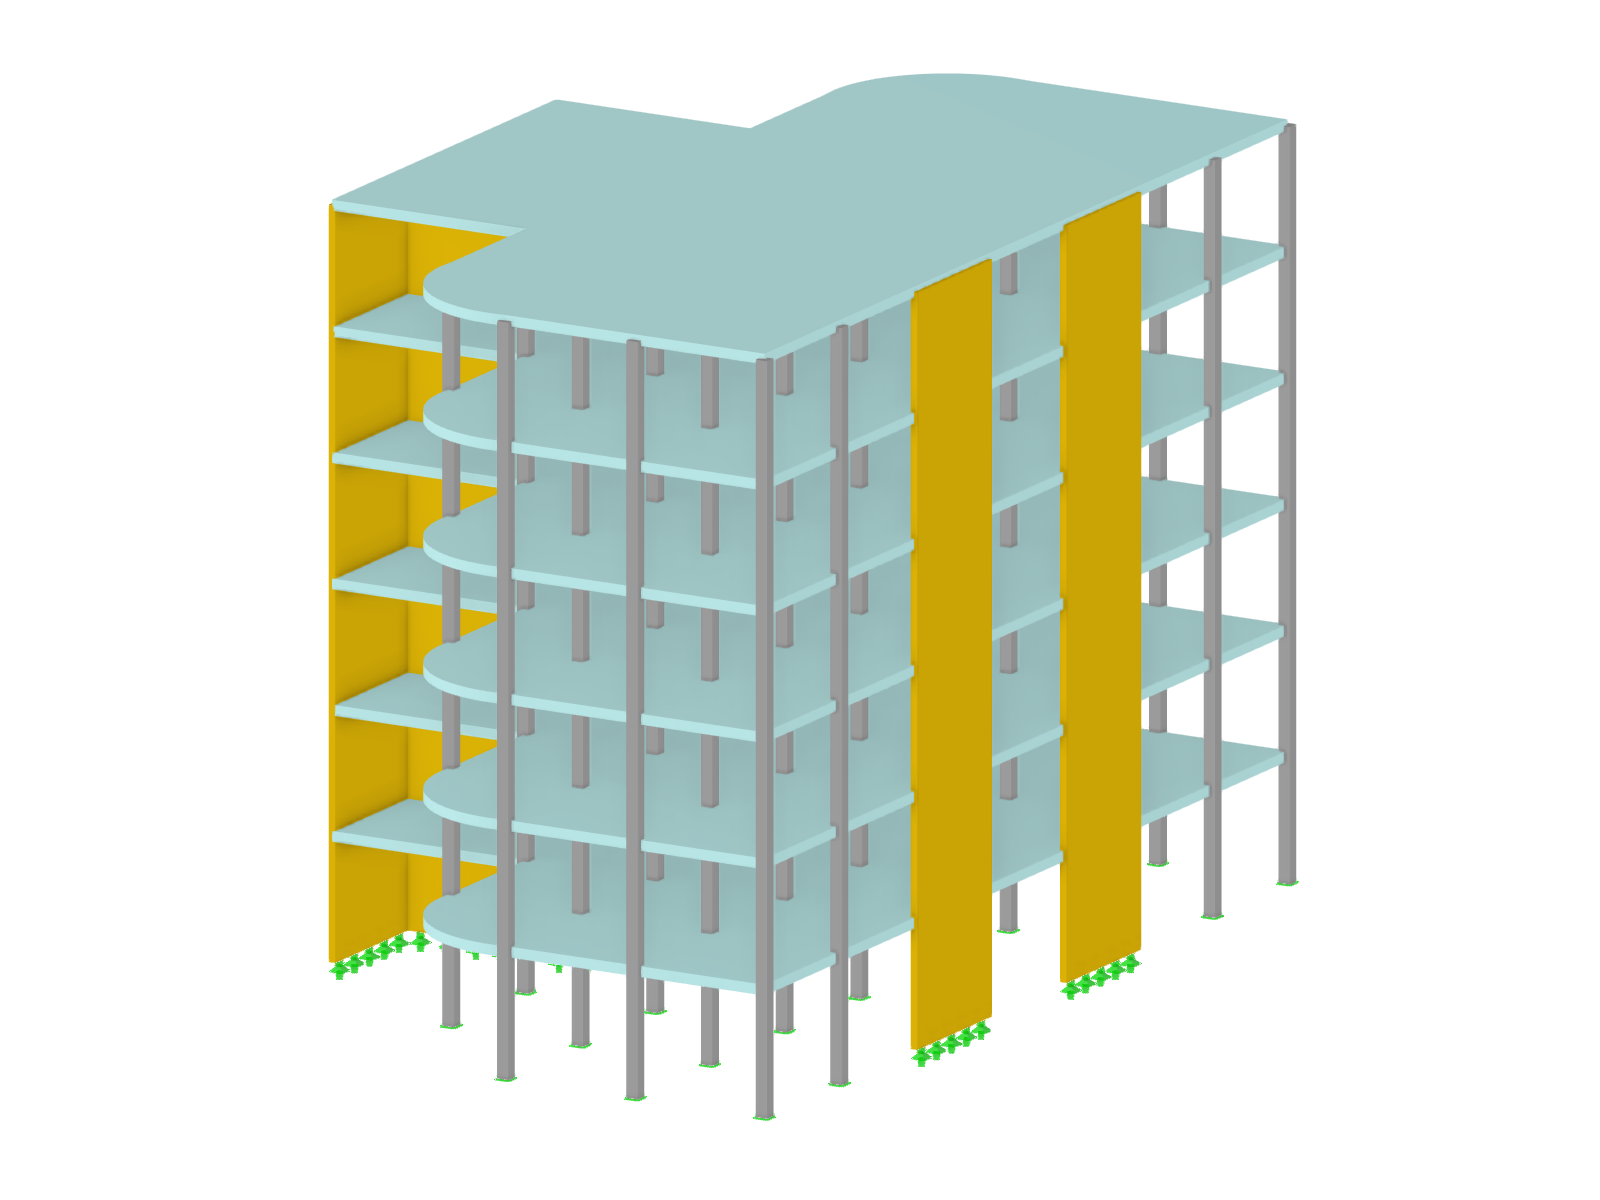 Edificio de hormigón (concreto) armado de varios pisos